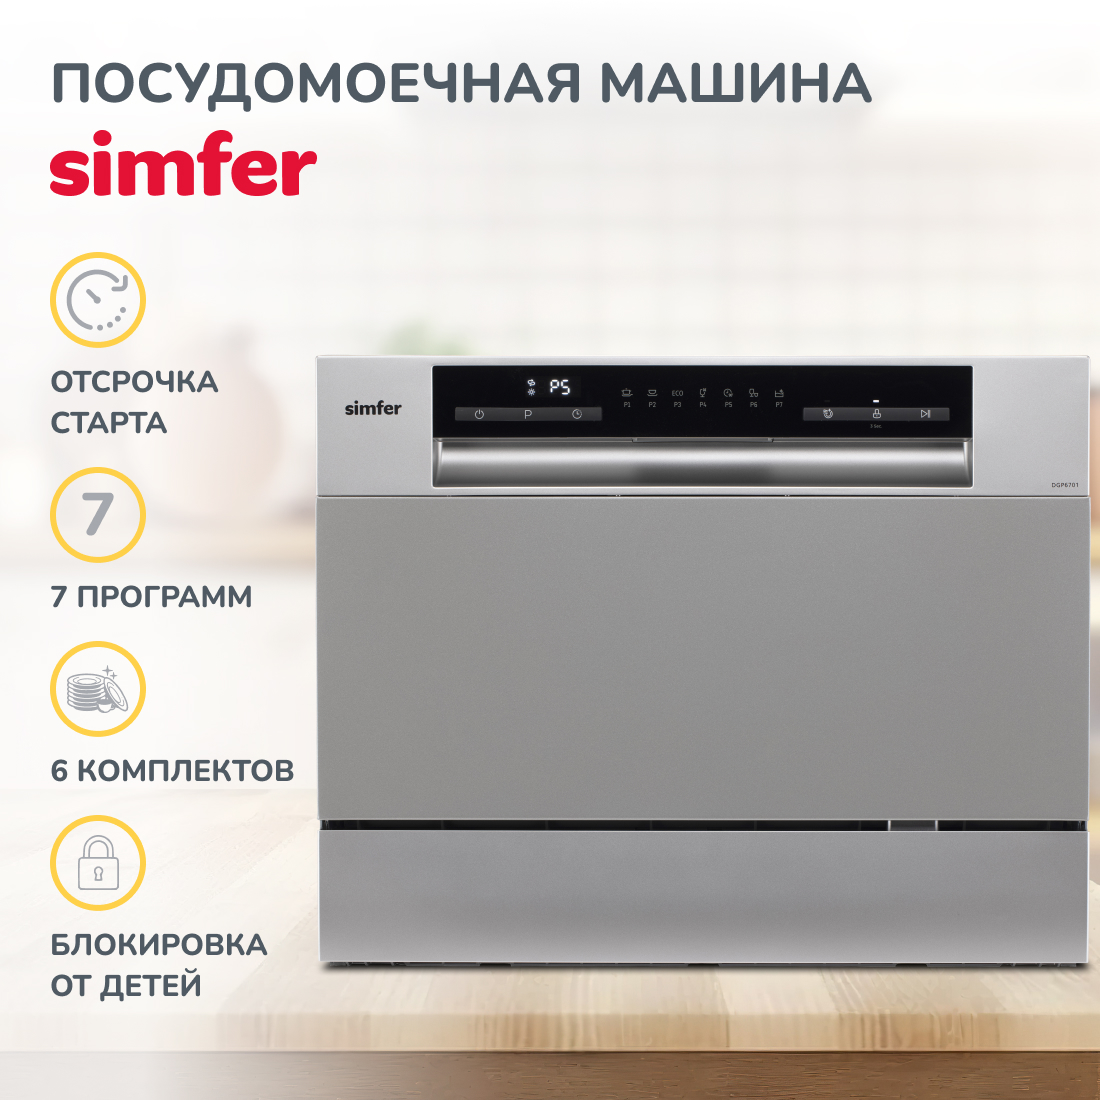 Настольная посудомоечная машина Simfer DGP6701 машина посудомоечная gorenje gv620e10